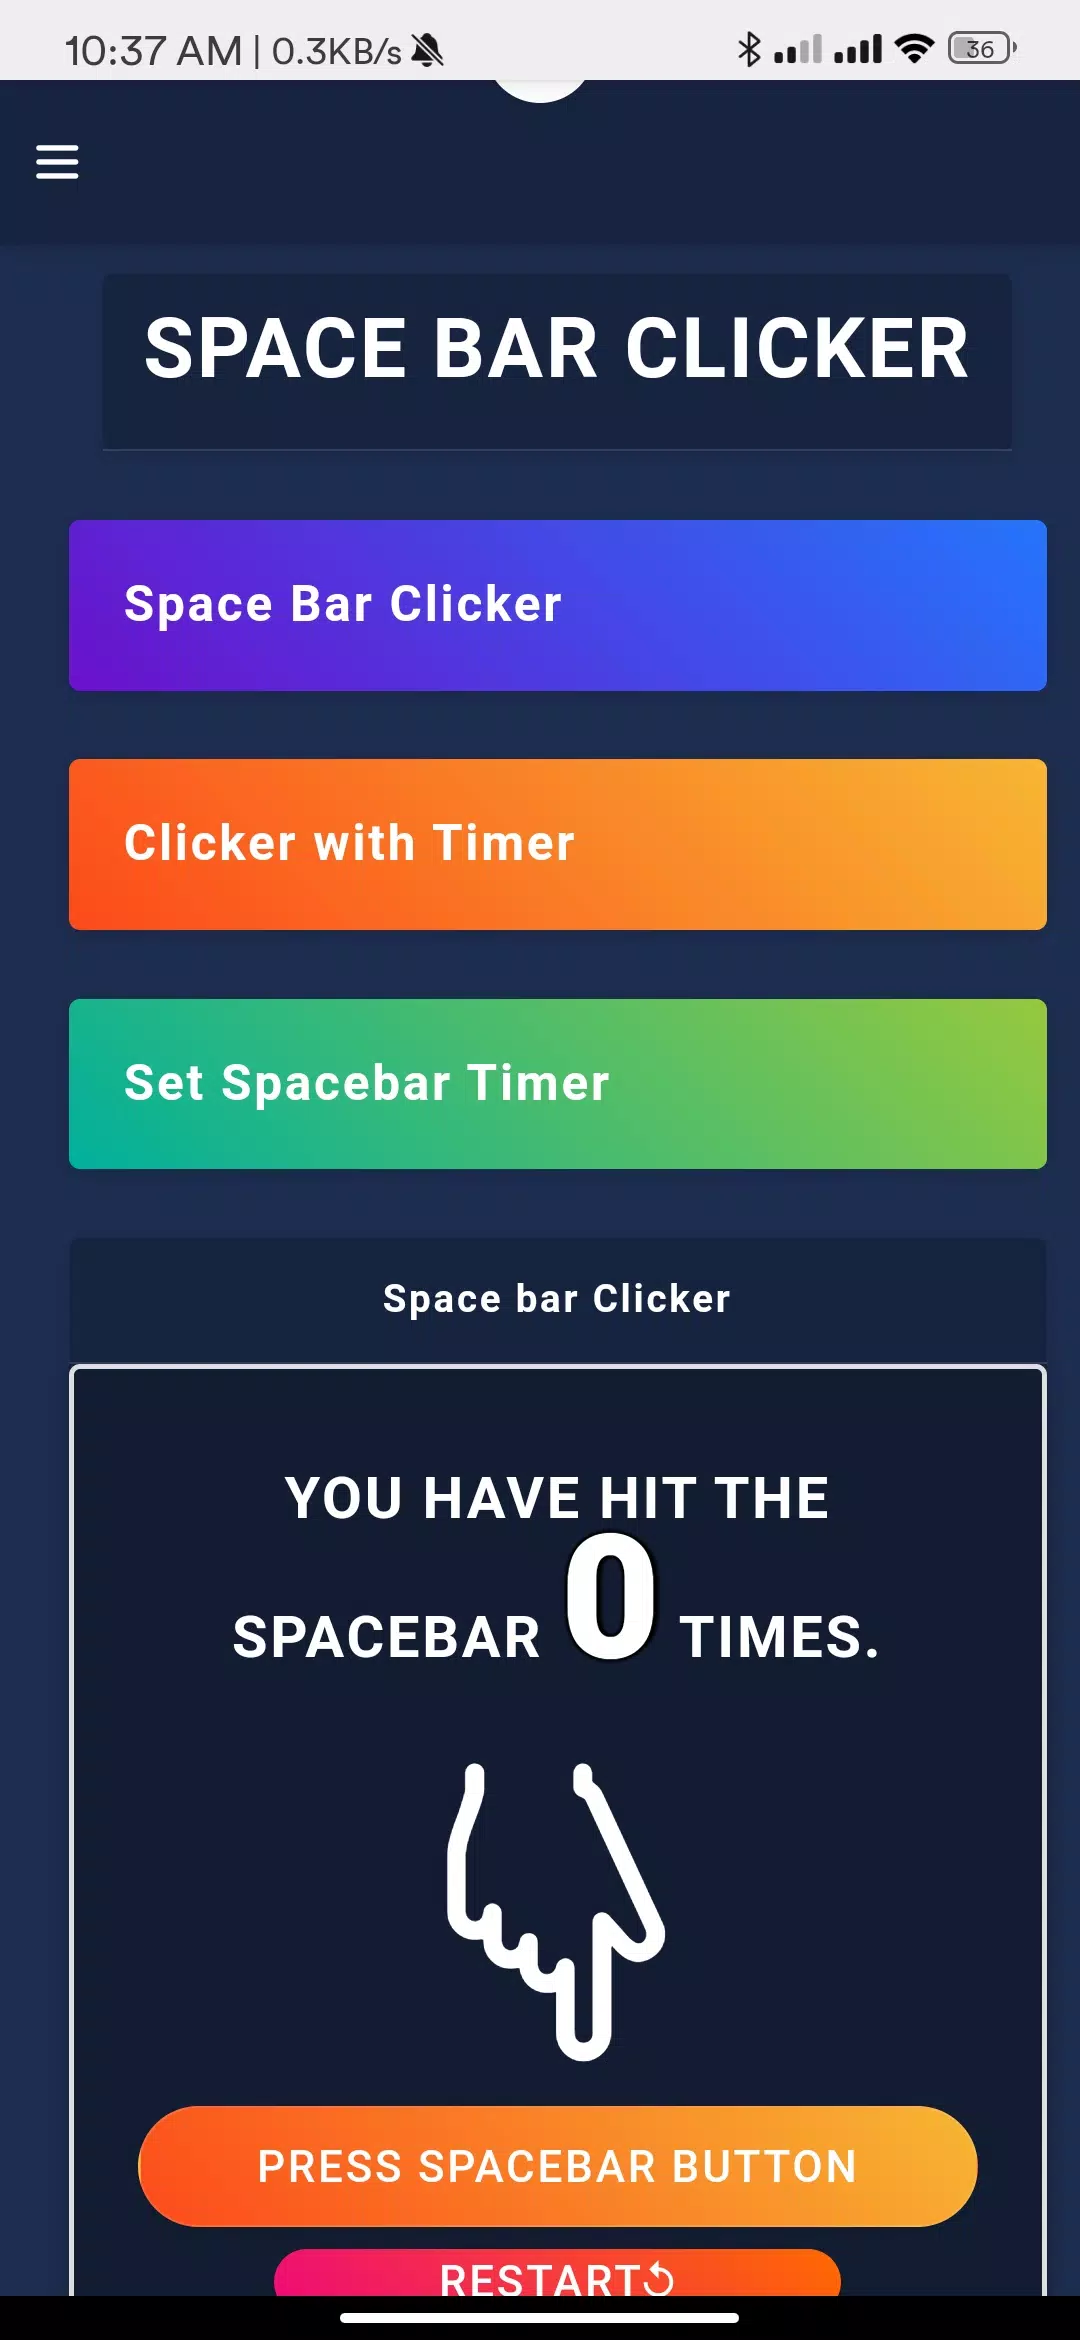 Spacebar Counter- Space bar Clicker